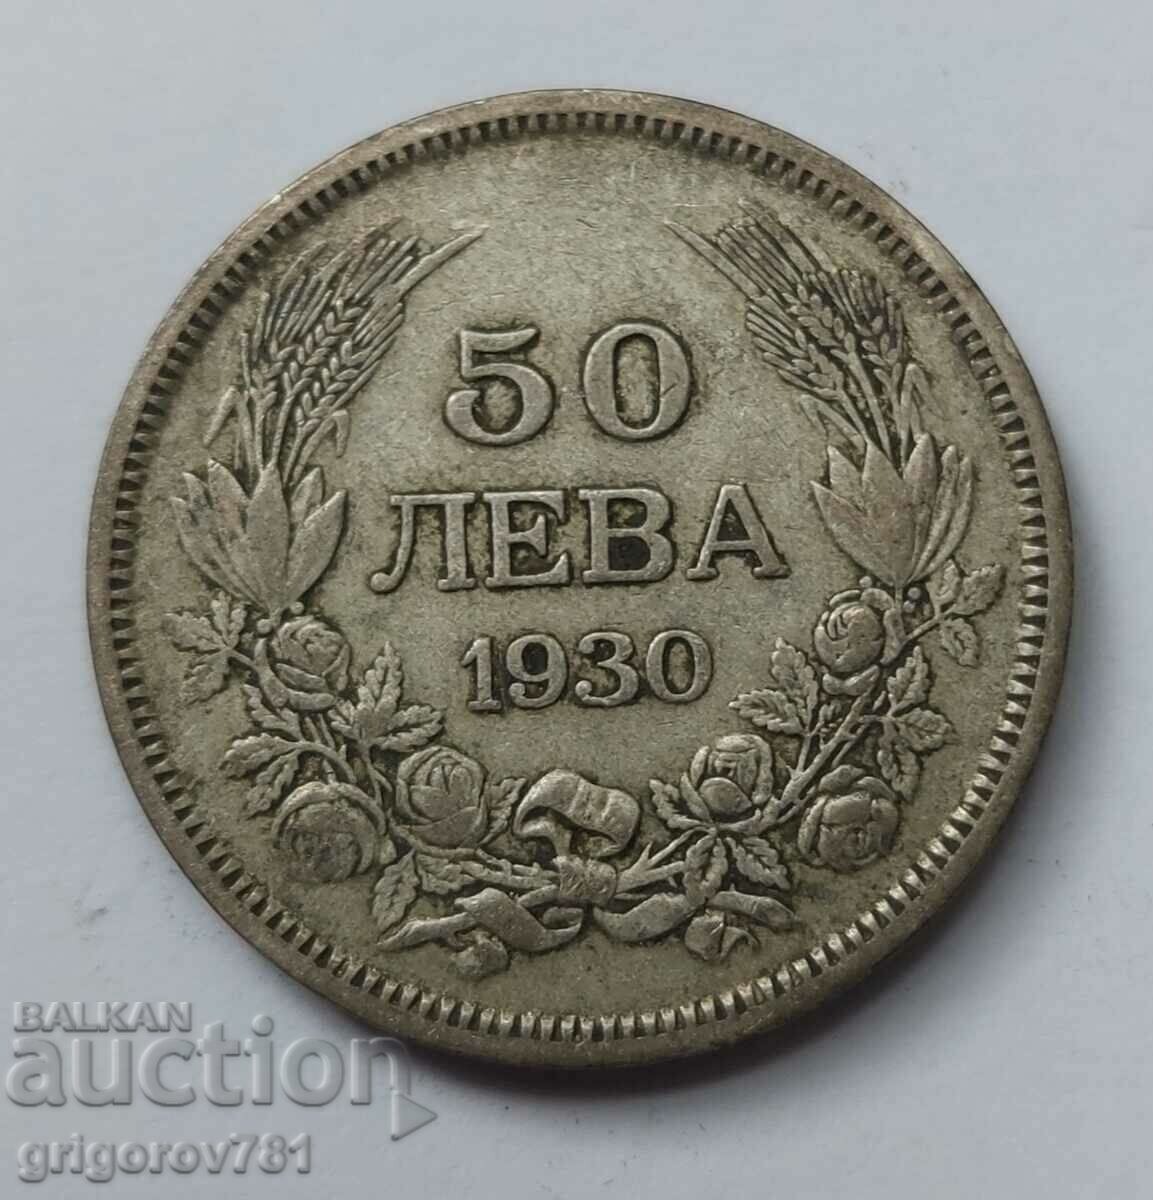 50 leva silver Bulgaria 1930 - silver coin #54